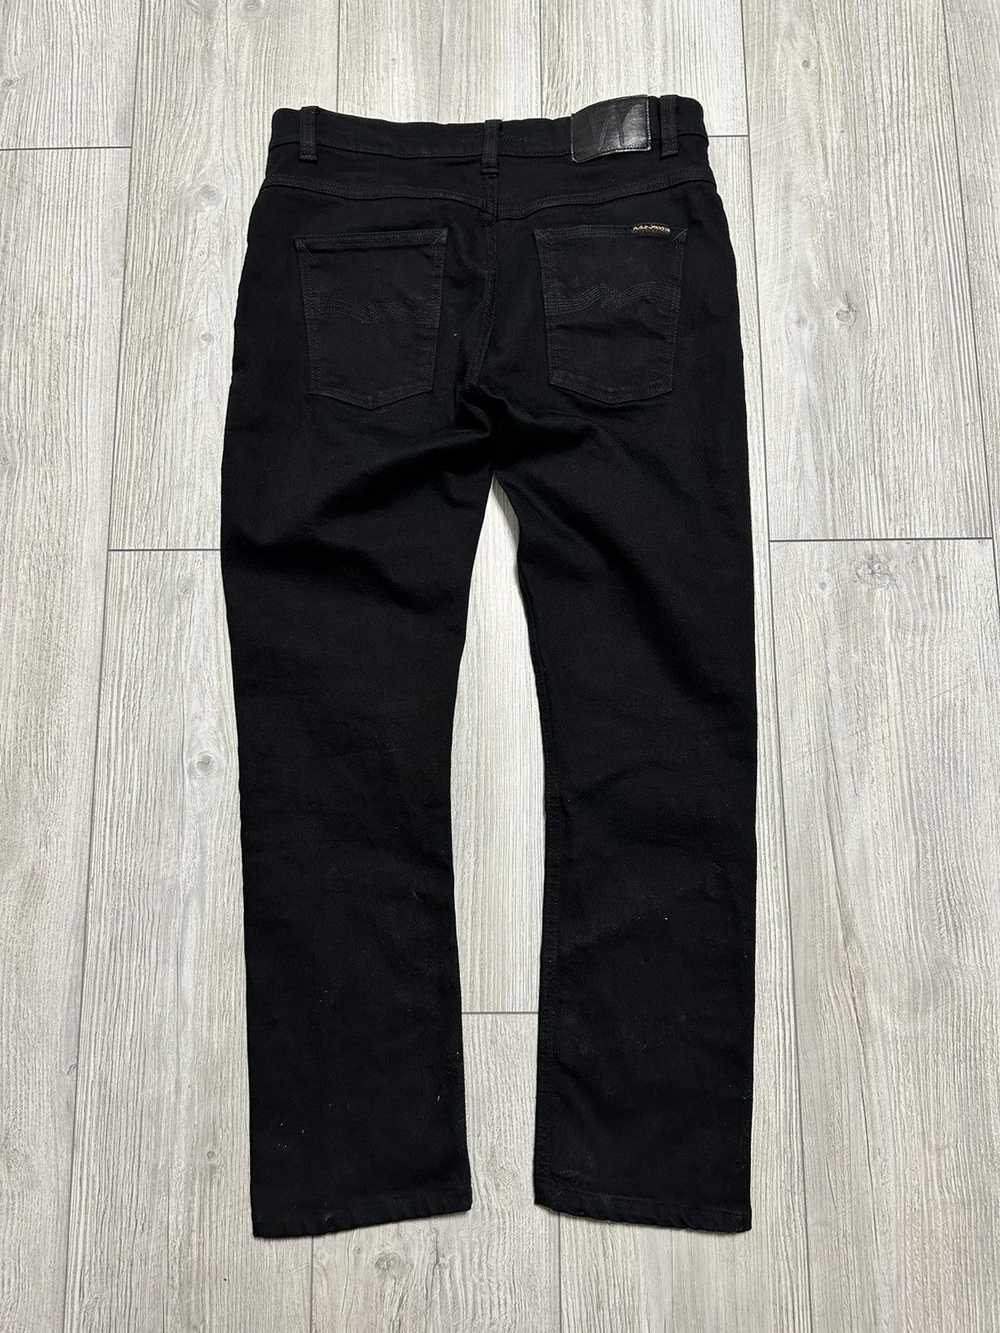 Nudie Jeans Nudie Jeans Lean Dean Dry Ever Black … - image 1